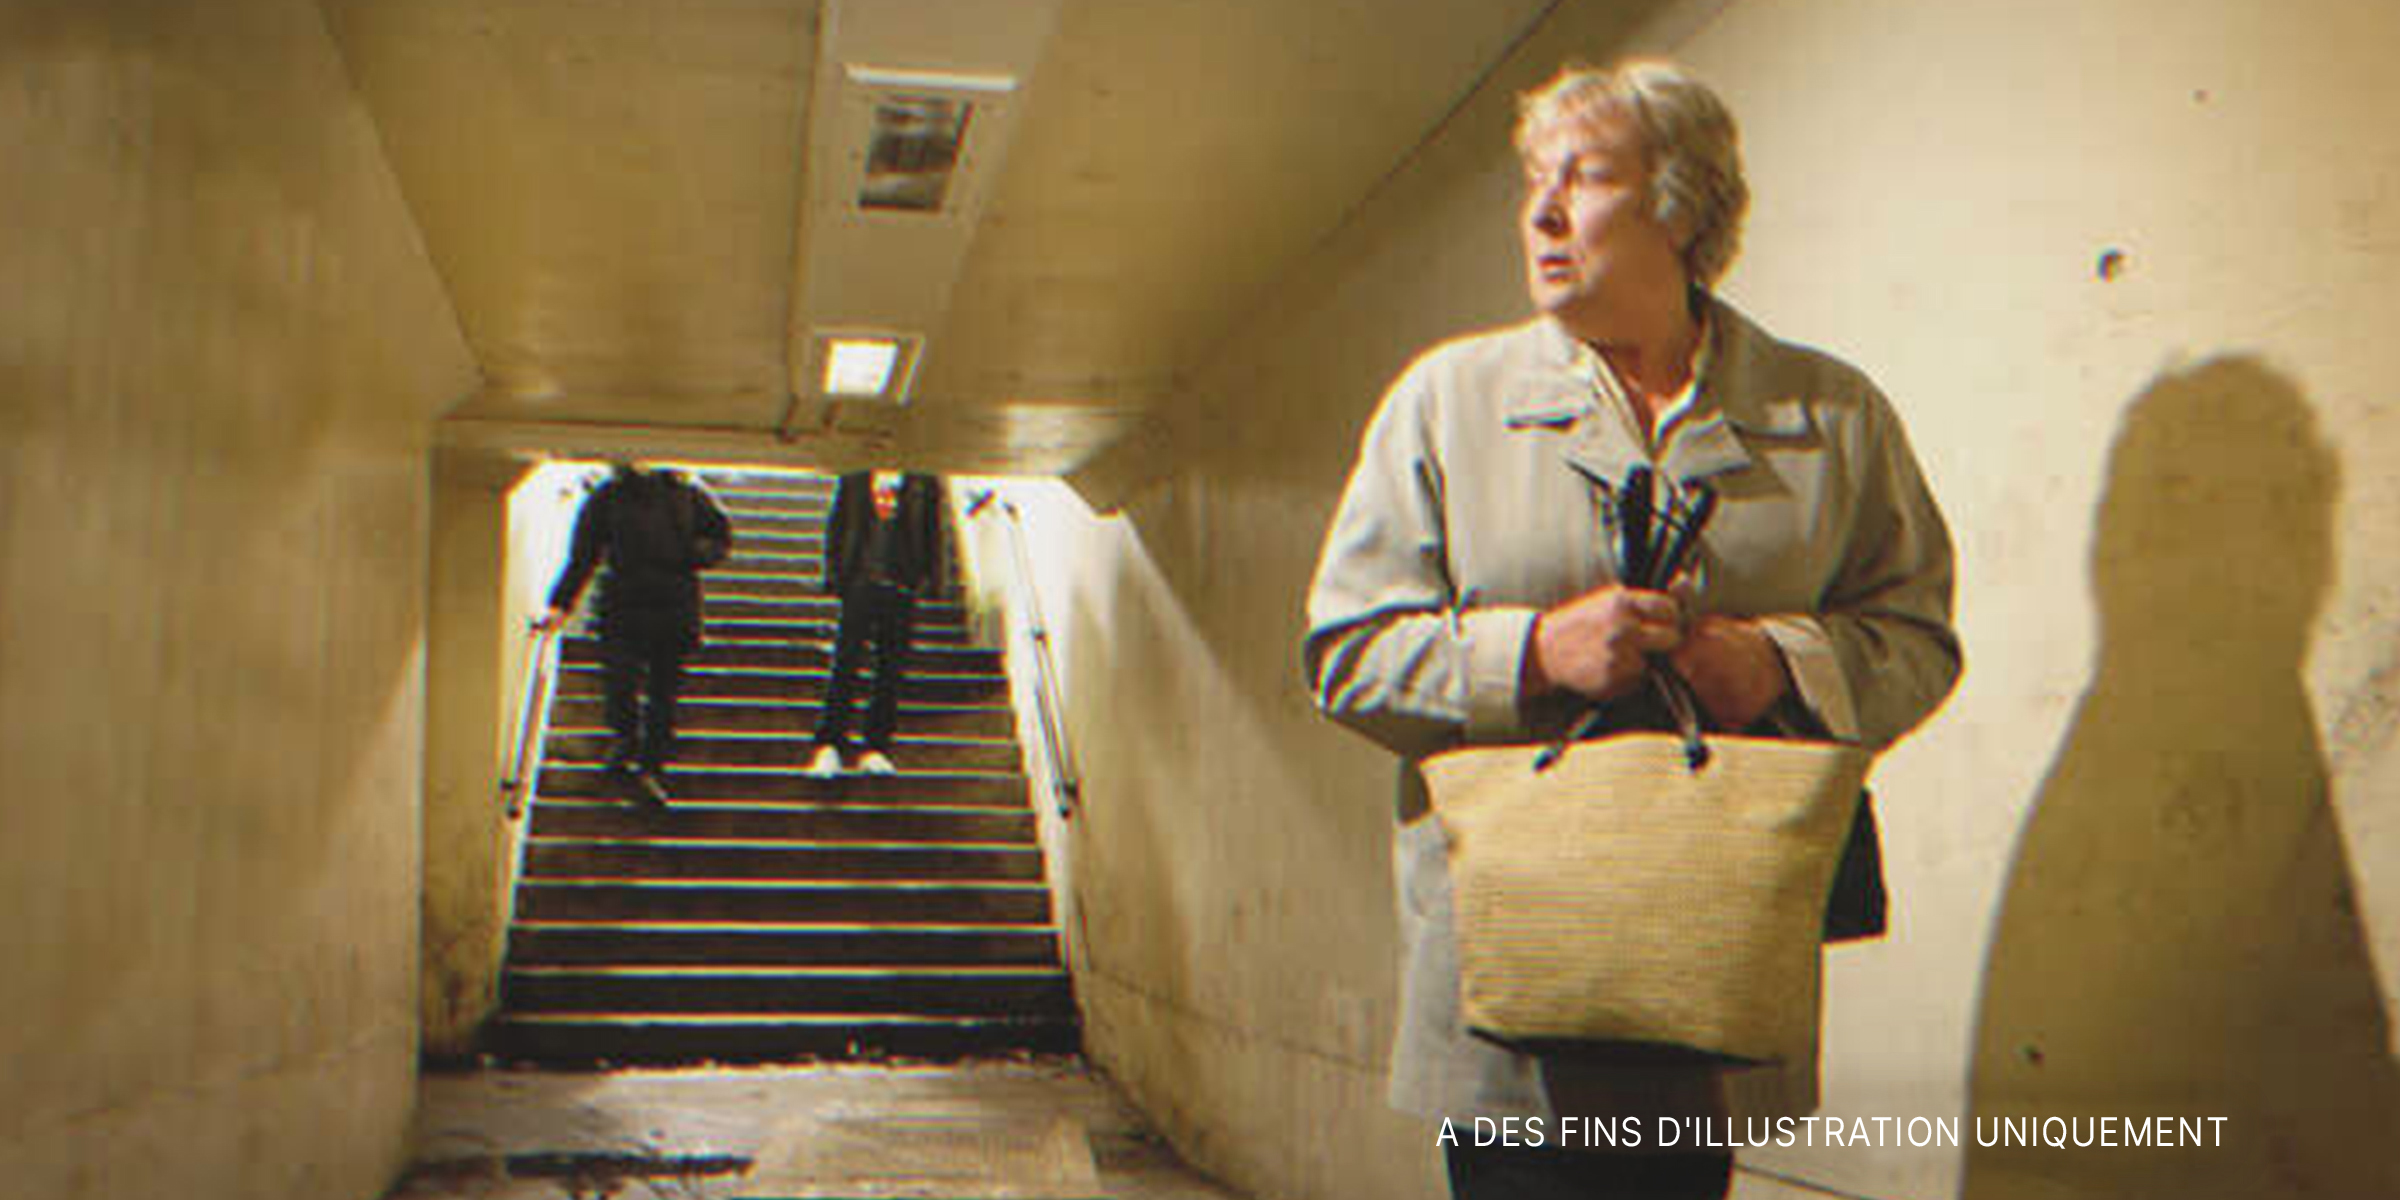 Une femme âgée serre son sac dans le métro | Source : Getty Images